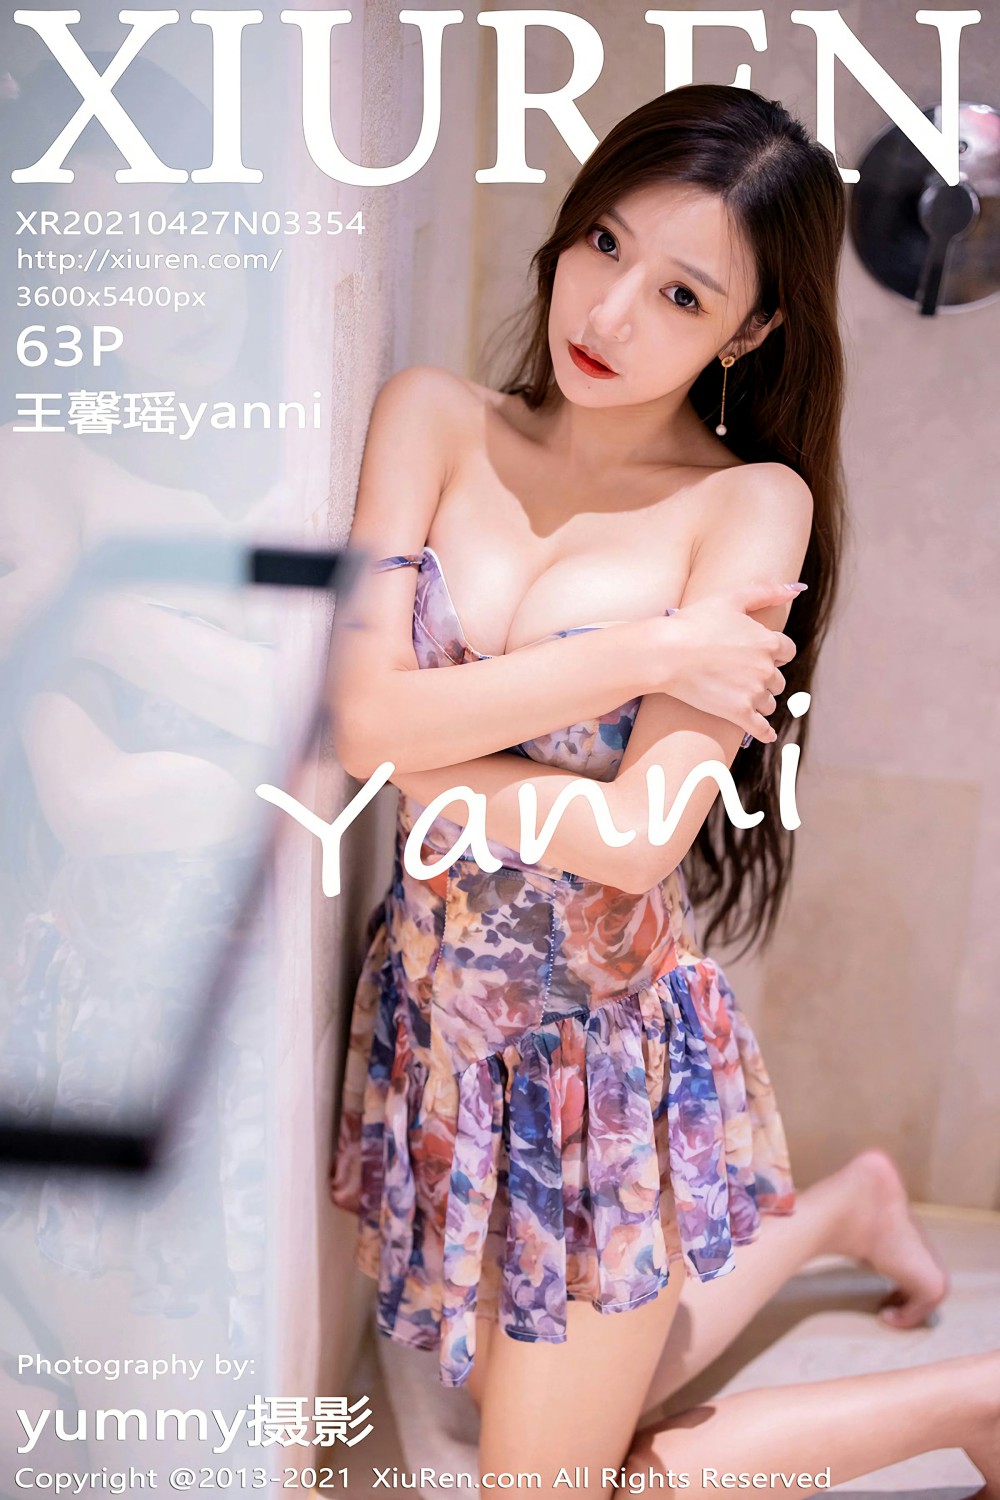 [XiuRen秀人网] 2021.04.27 No.3354 王馨瑶yanni [63+1P]